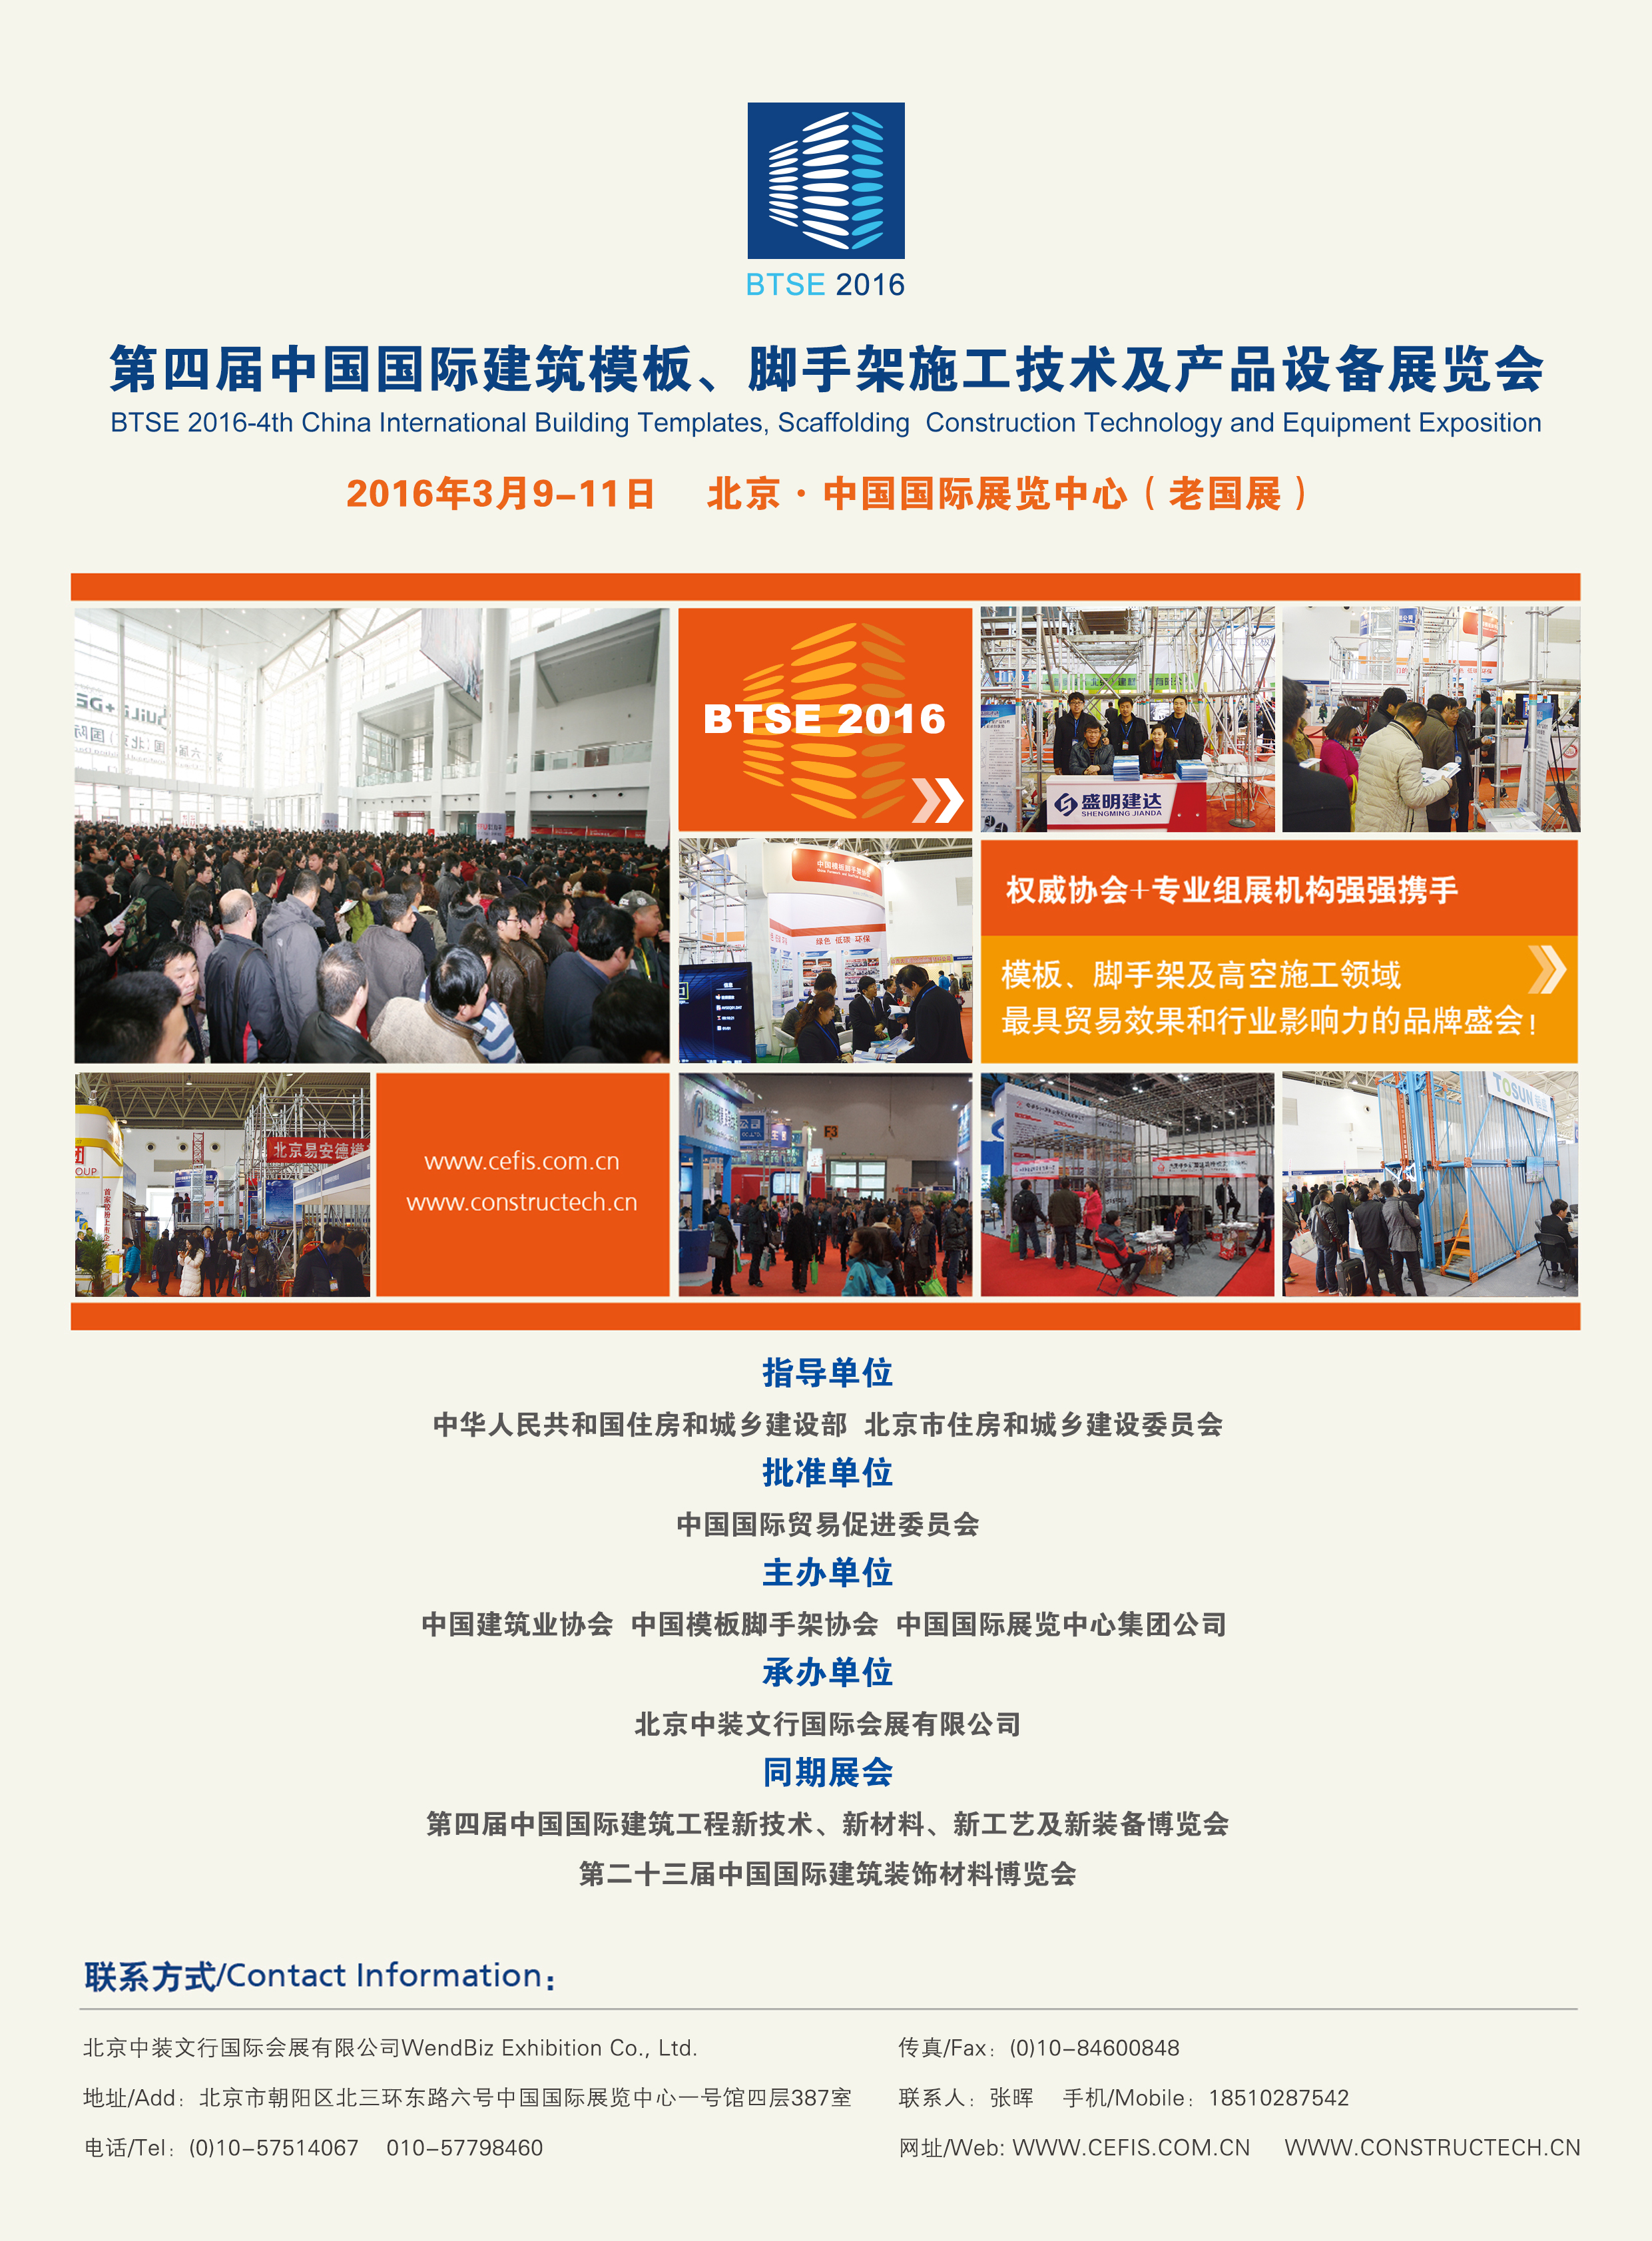 供应2016北京建筑模板脚手架展览会